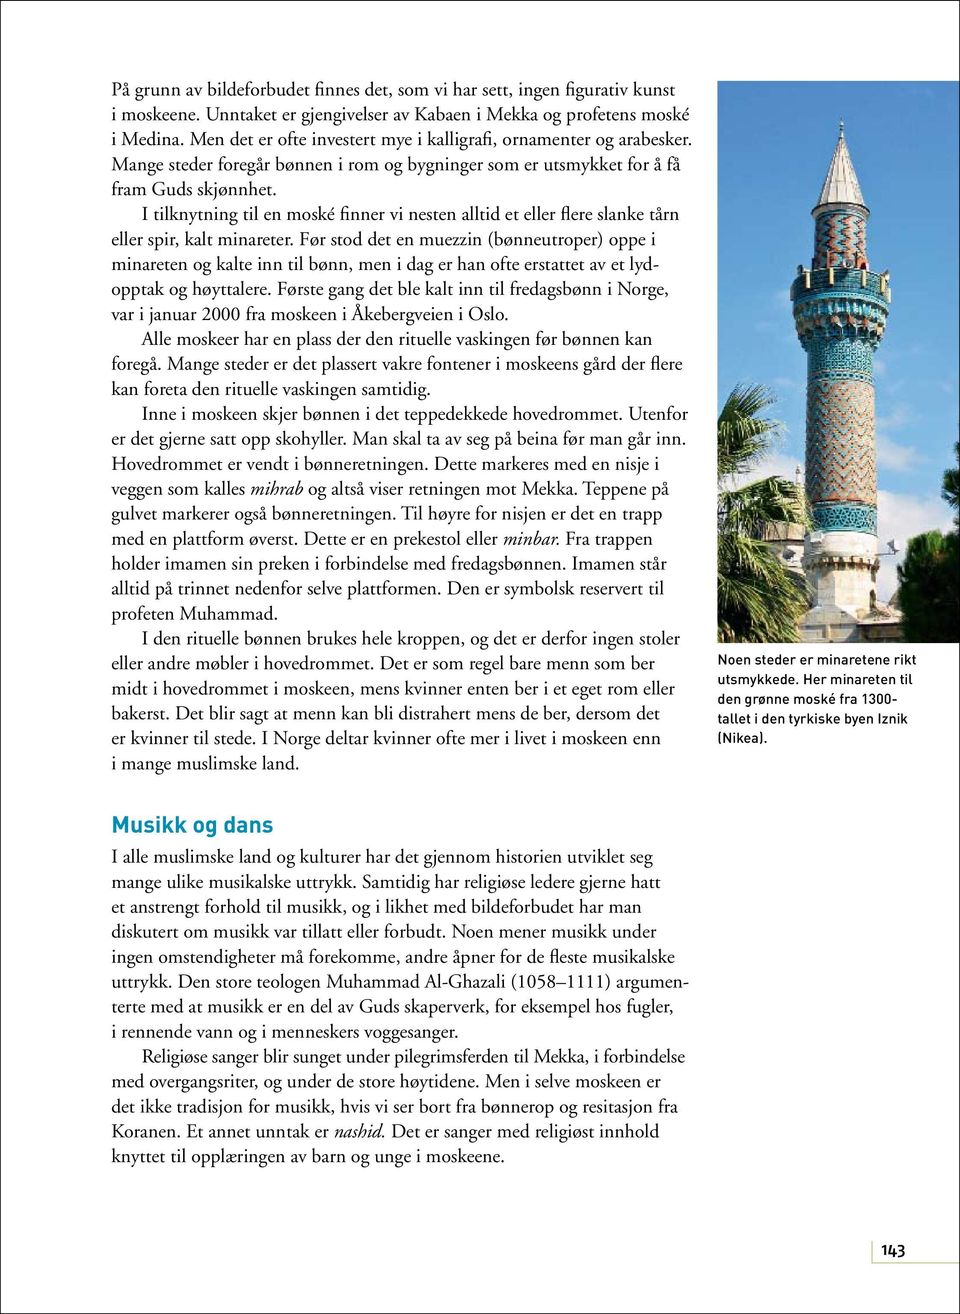 I tilknytning til en moské finner vi nesten alltid et eller flere slanke tårn eller spir, kalt minareter.